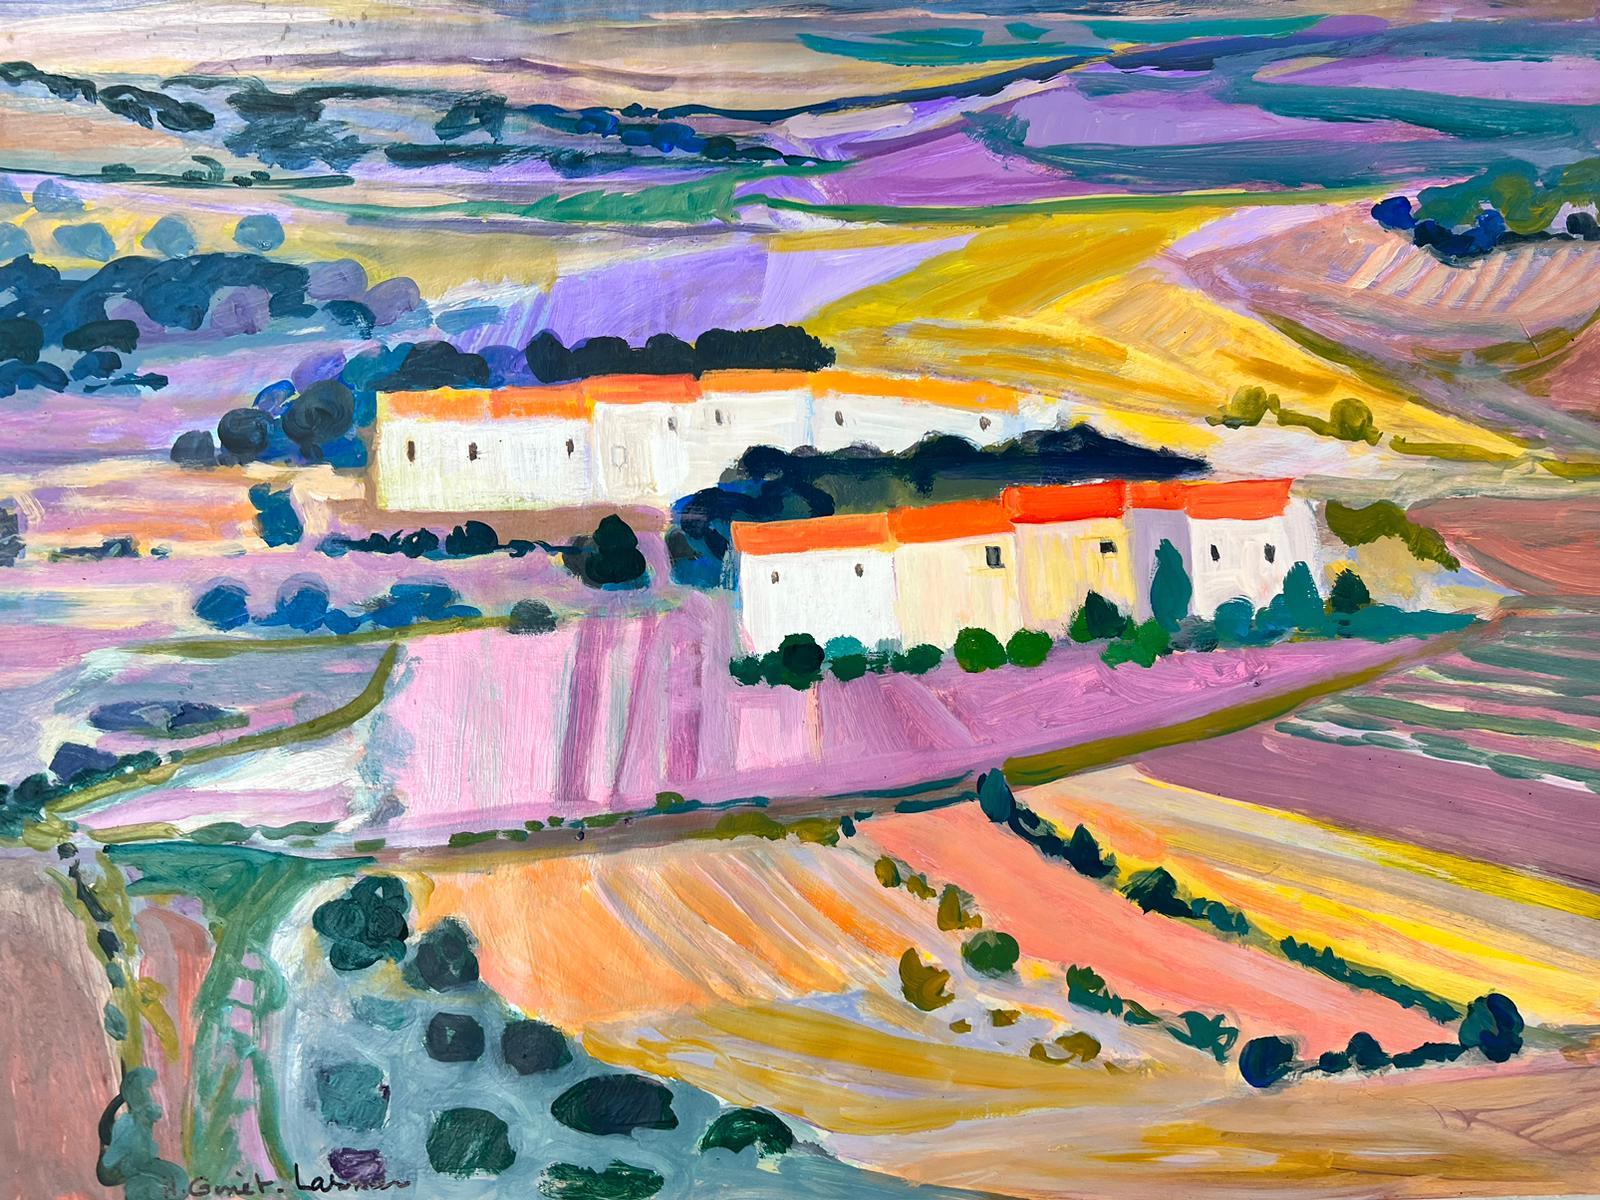 Landscape Painting Huguette Ginet-Lasnier  - Les champs lavandes de Provence - Grande peinture contemporaine française moderniste